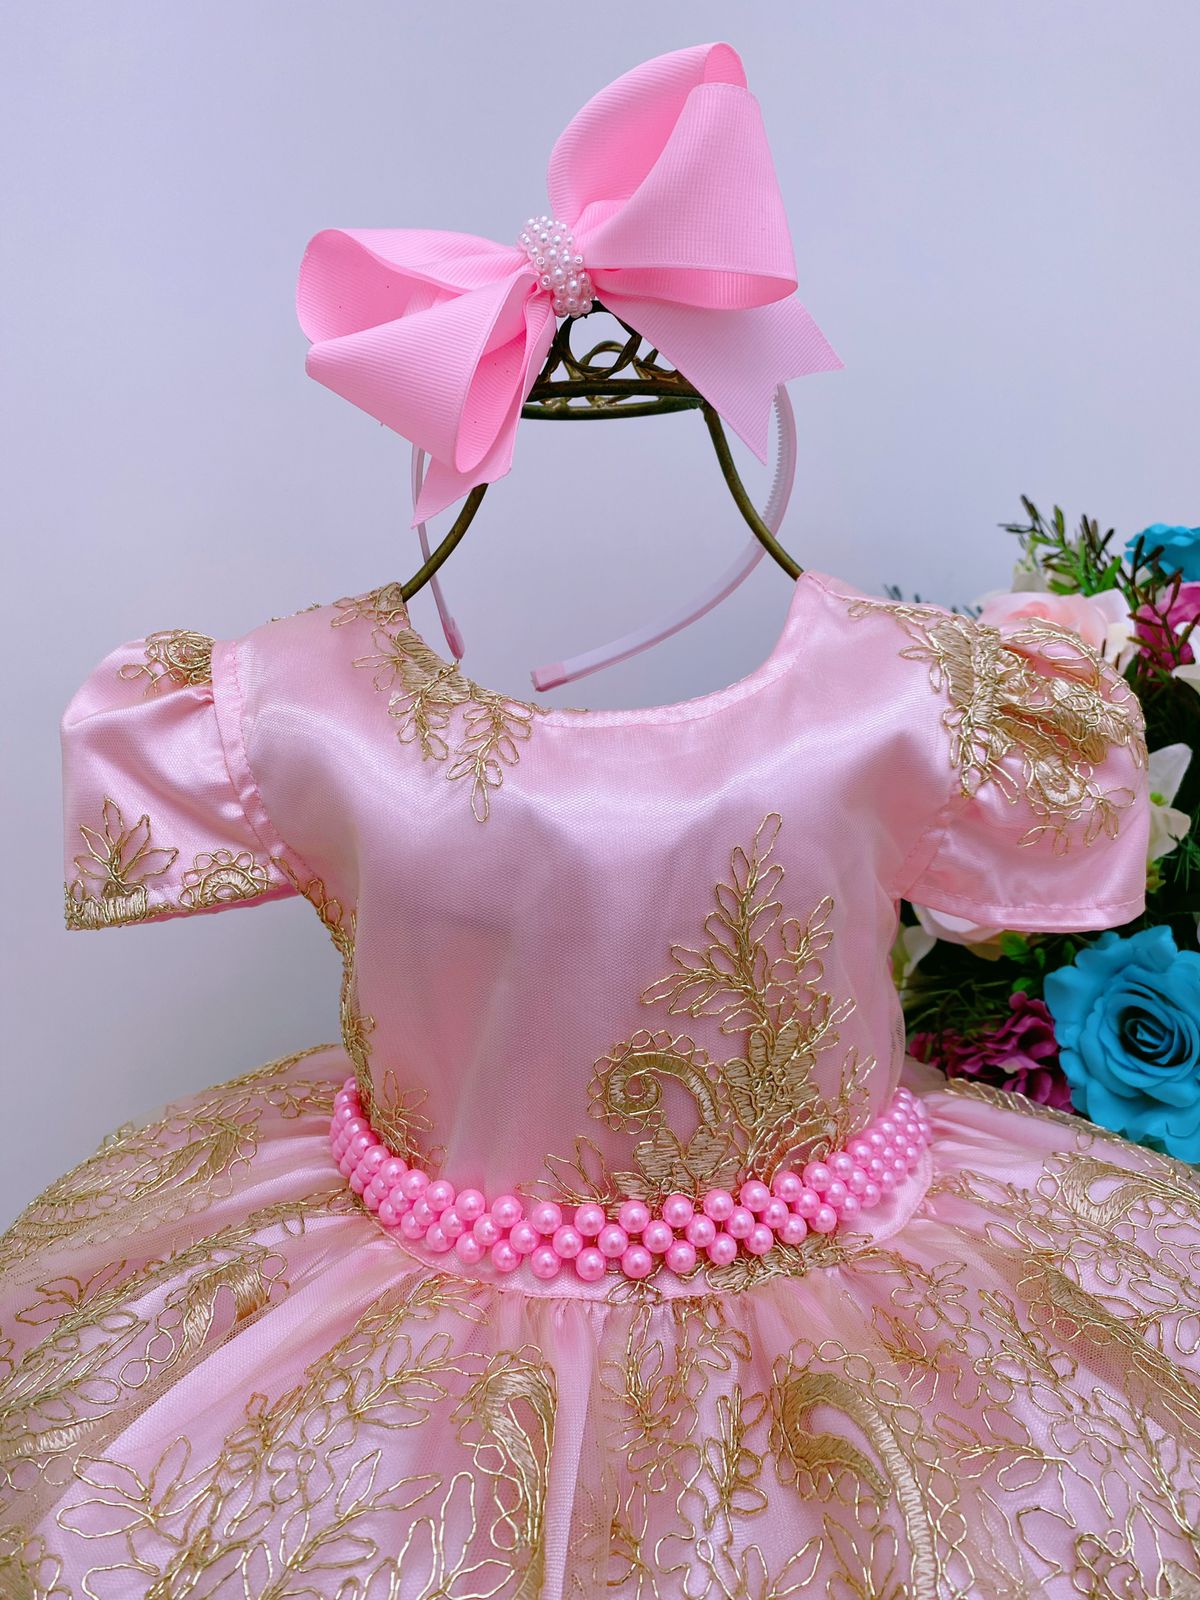 Compra online de Bordado elegante crianças vestidos de princesa para  meninas luxo renda dourada do vintage crianças festival festa vestido bebê  batismo